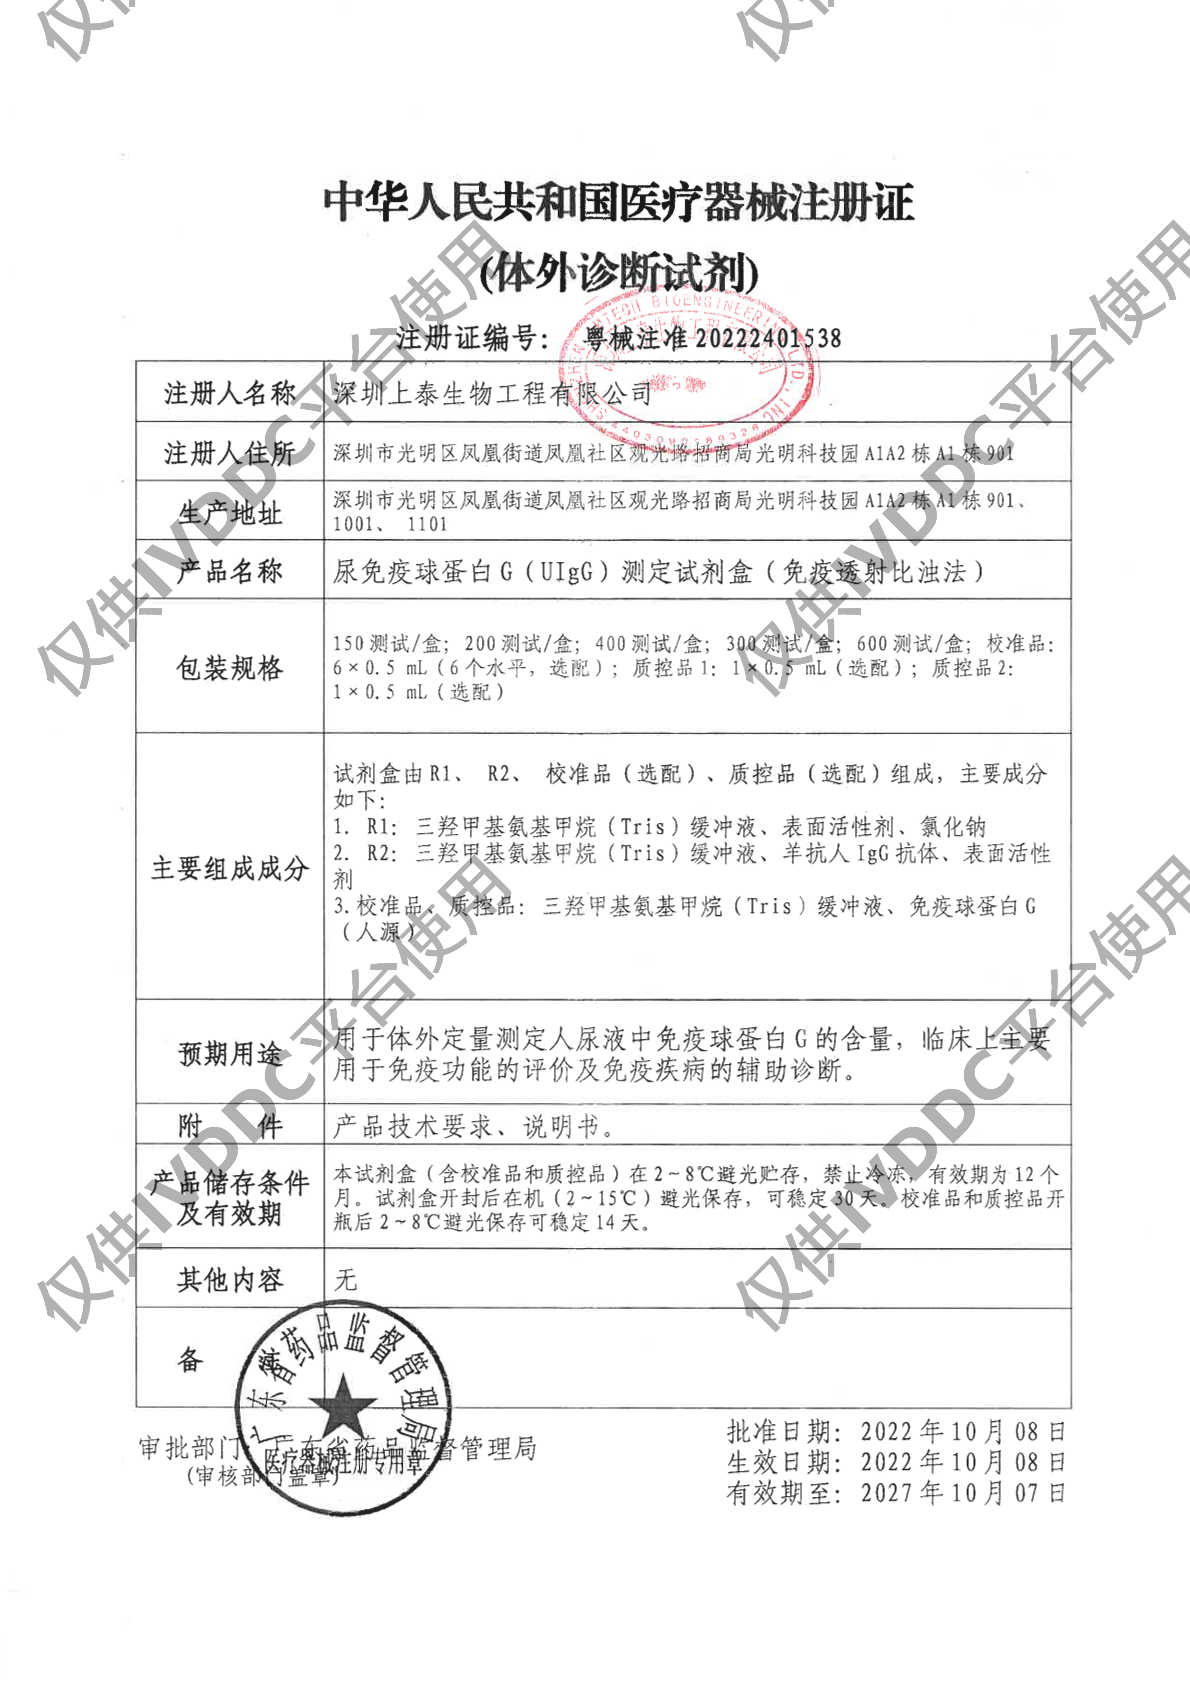 【深圳上泰】尿免疫球蛋白G(UIgG)测定试剂盒(免疫透射比浊法)注册证